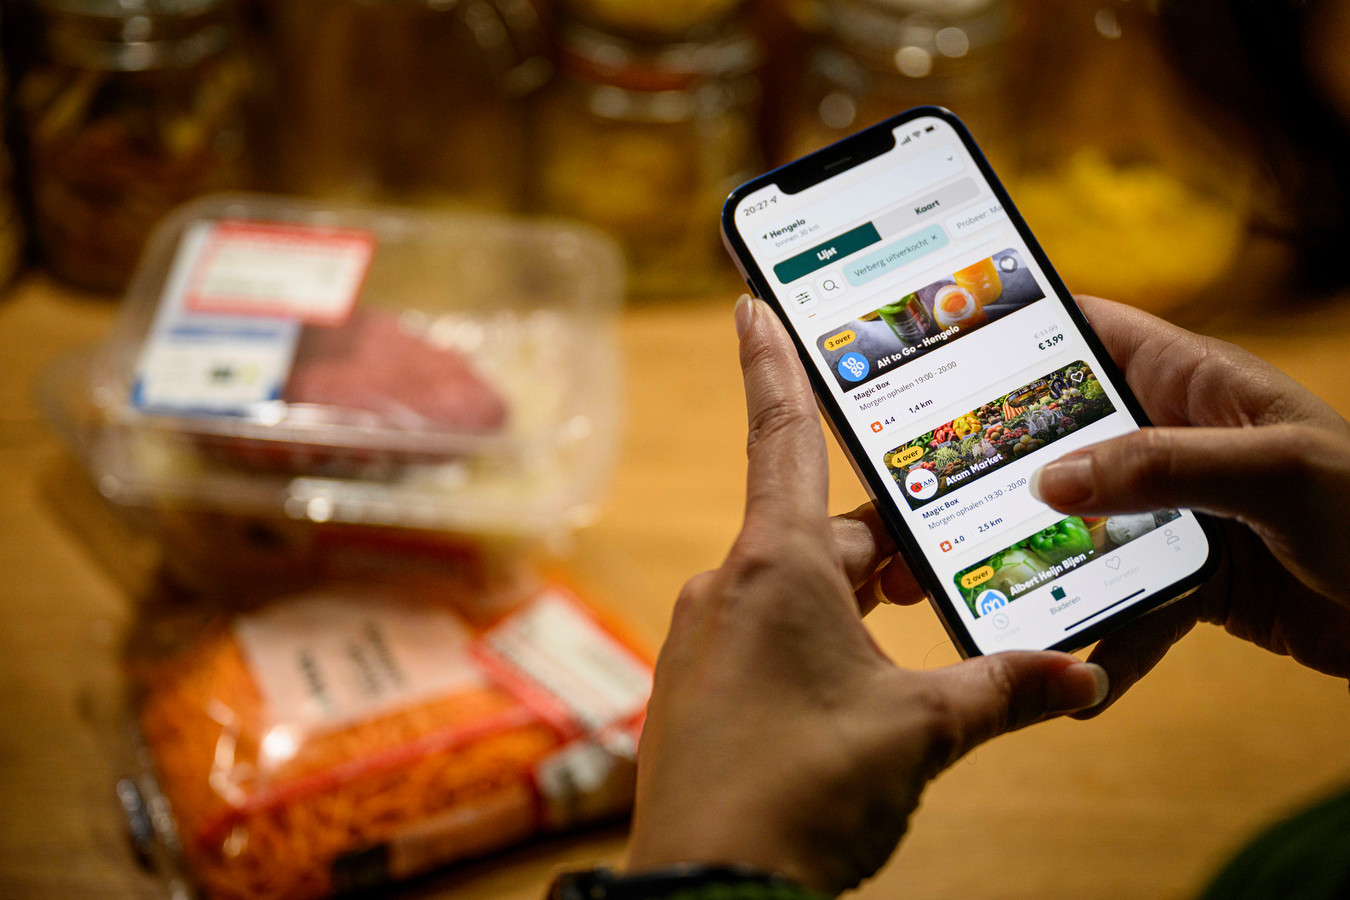 Via de app van Too Good to Go kunnen klanten voedselpakketen bestellen, gevuld met producten die anders zouden worden weggegooid.